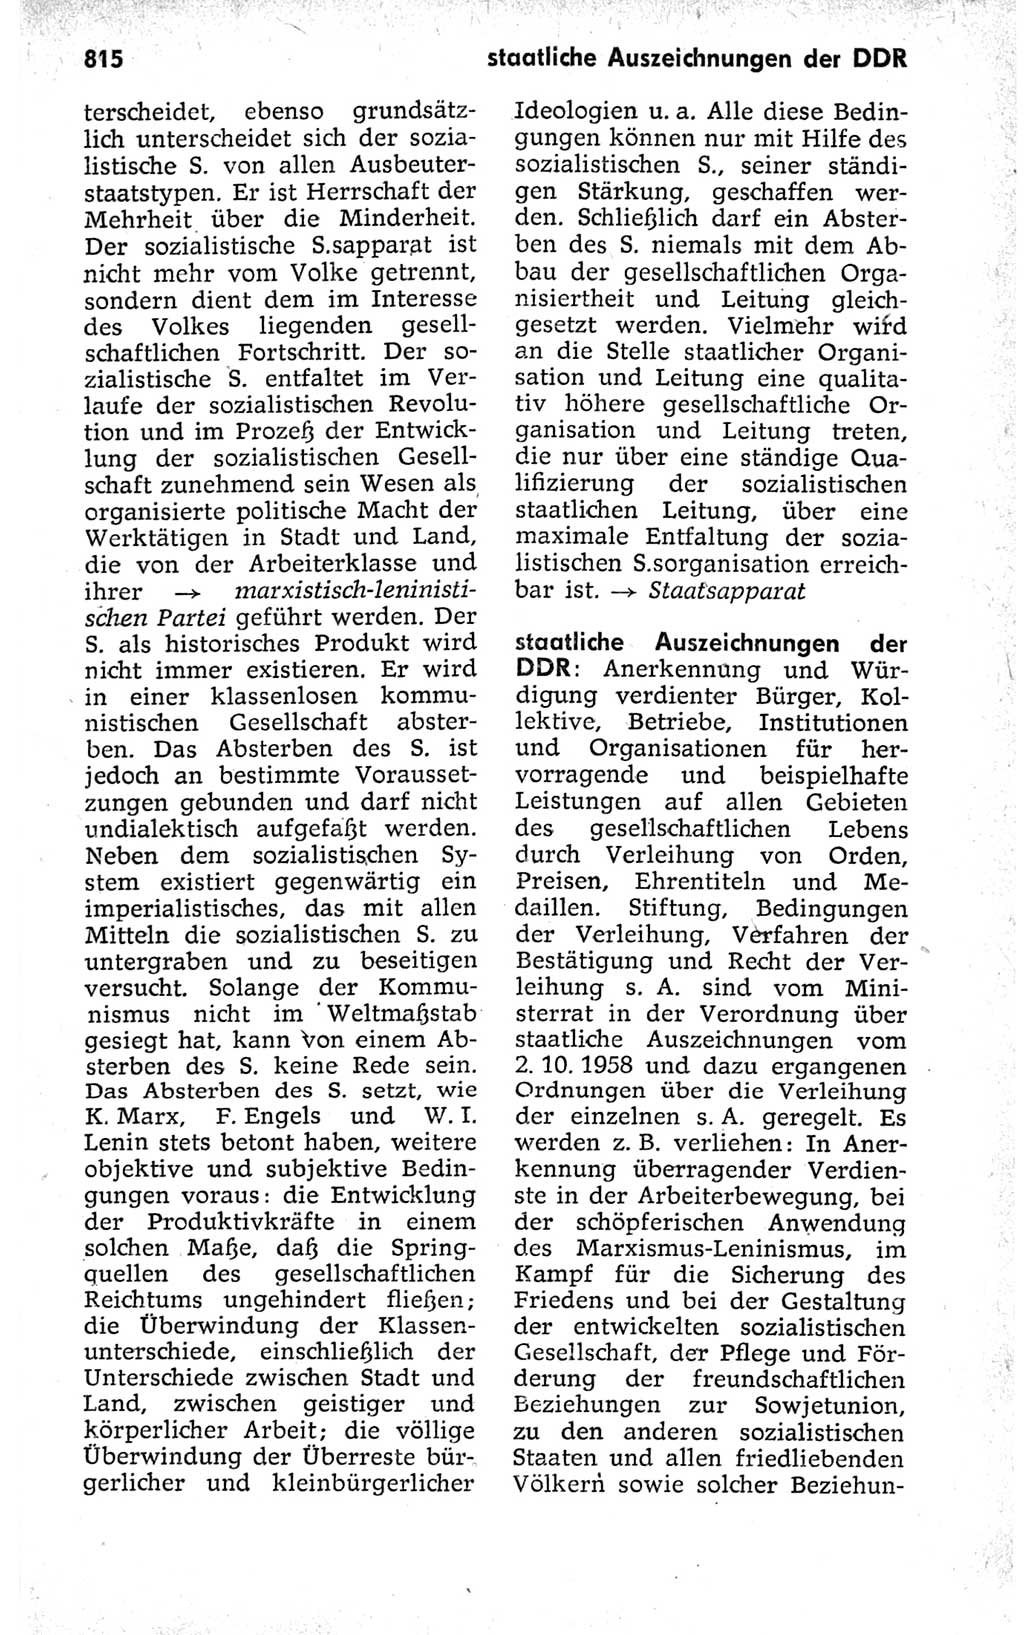 Kleines politisches Wörterbuch [Deutsche Demokratische Republik (DDR)] 1973, Seite 815 (Kl. pol. Wb. DDR 1973, S. 815)